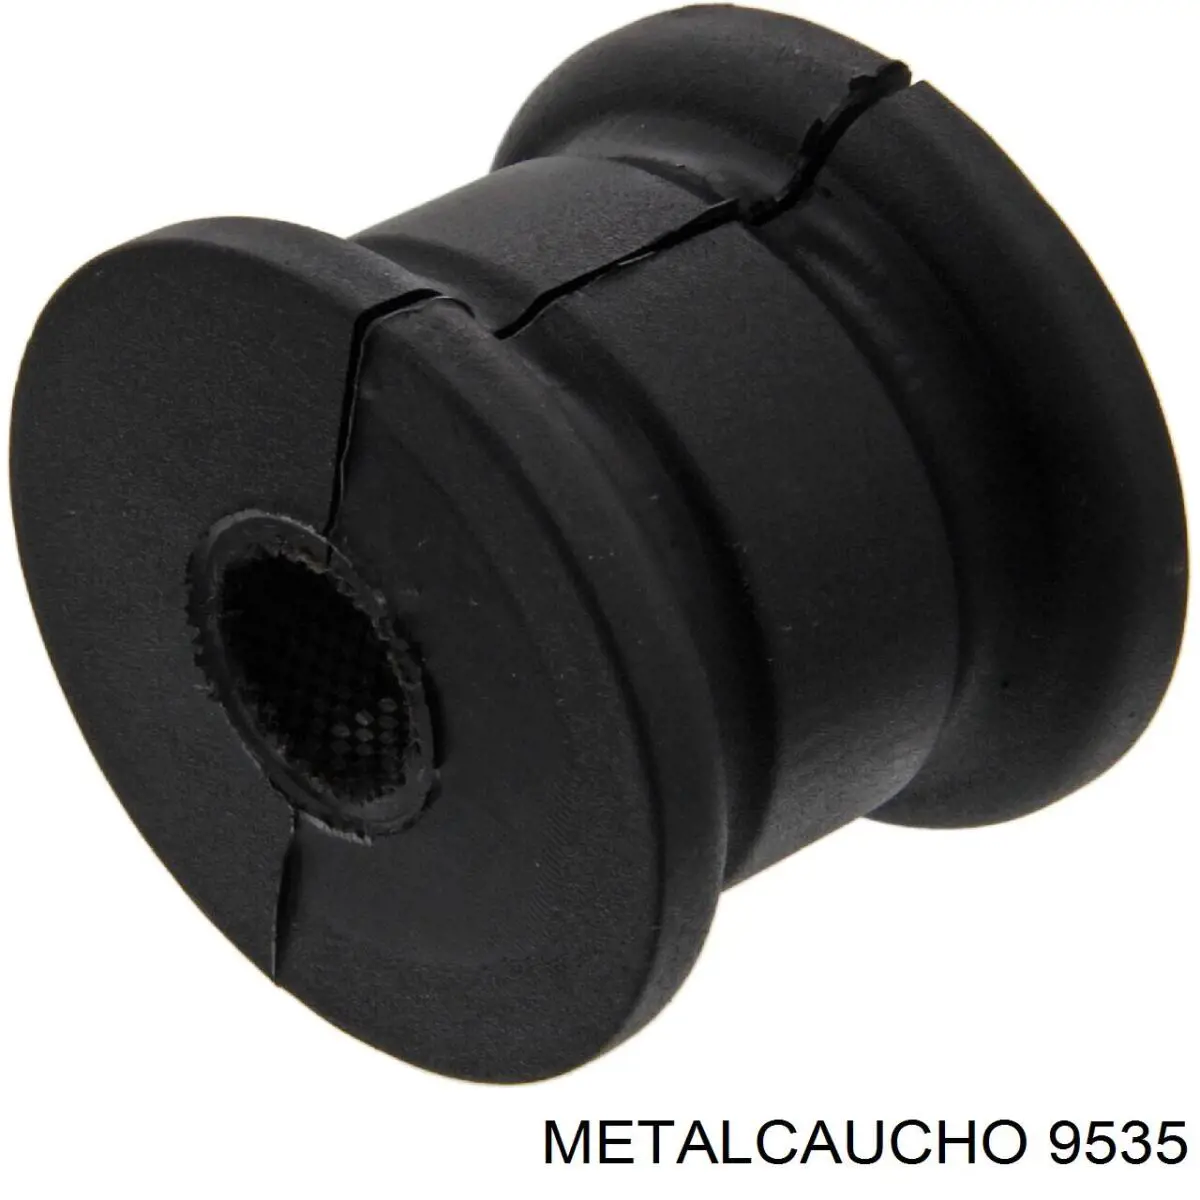 9535 Metalcaucho tubo (manguera Para Drenar El Aceite De Una Turbina)